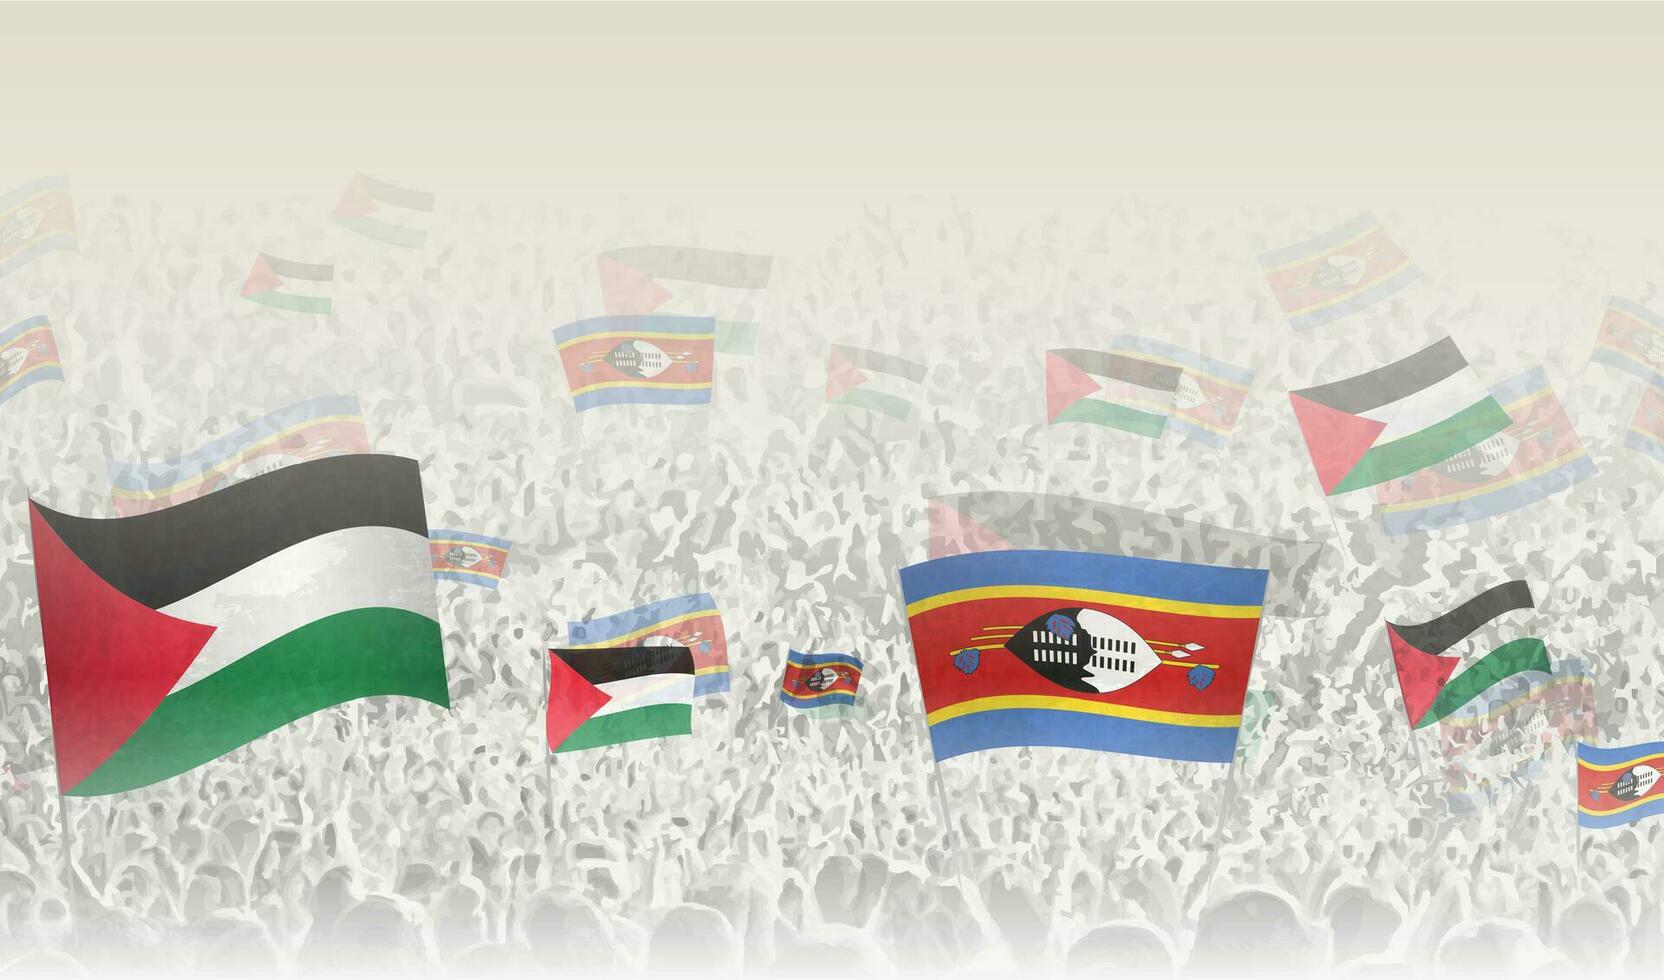 Palestina y Swazilandia banderas en un multitud de aplausos gente. vector